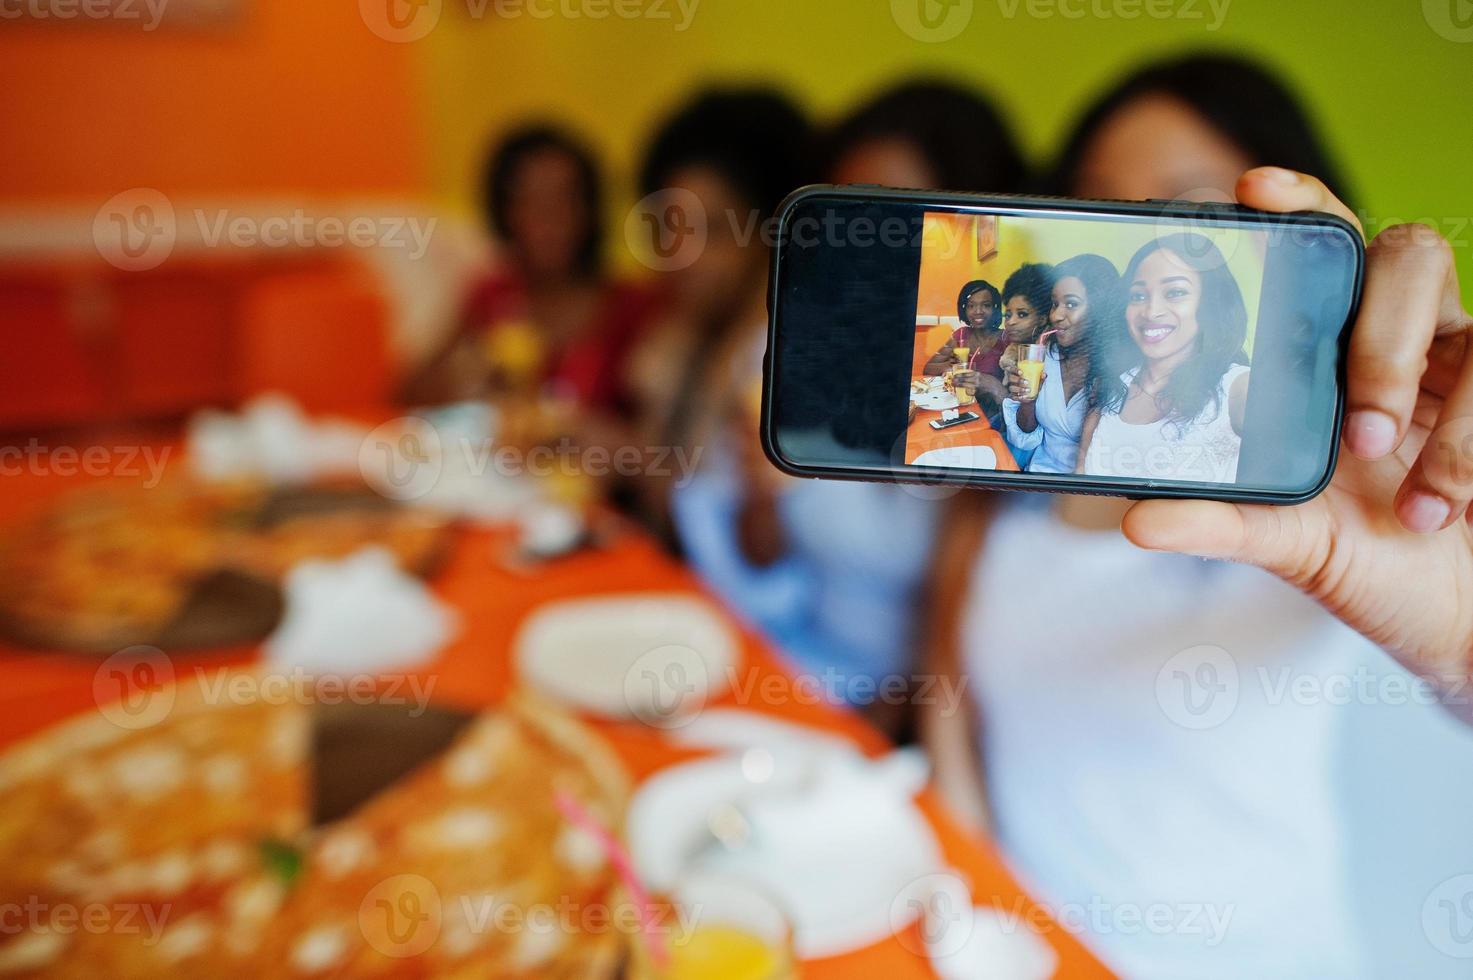 feche a tela do telefone da foto de quatro jovens africanas no restaurante colorido brilhante comendo pizza, se divertindo juntos e fazendo selfie.